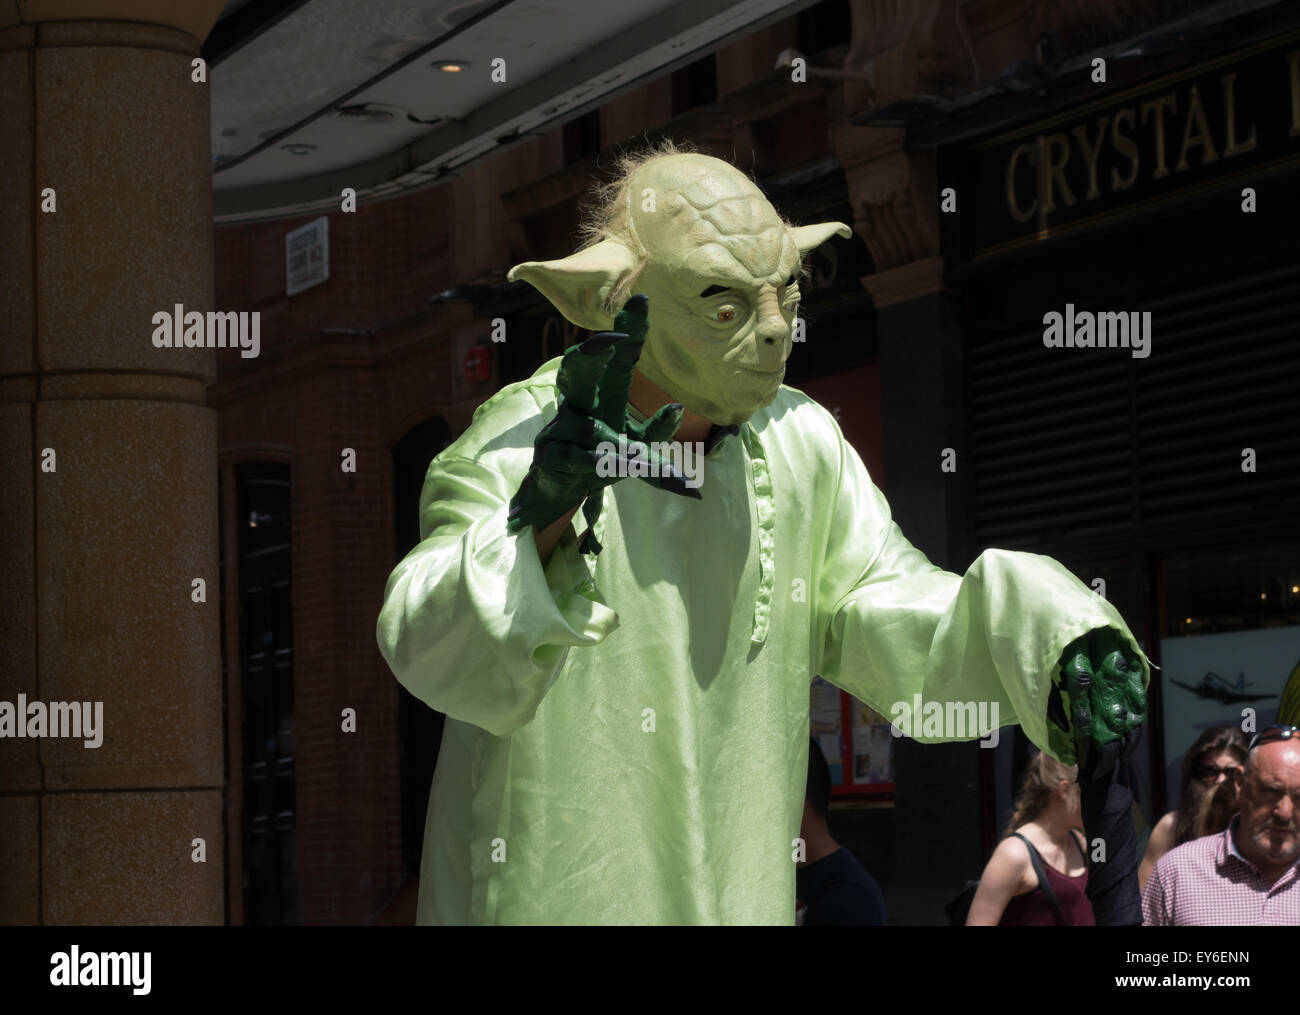 Eine Straße Entertainer gekleidet wie die Figur Yoda aus Star Wars, Leicester Square, London UK Stockfoto